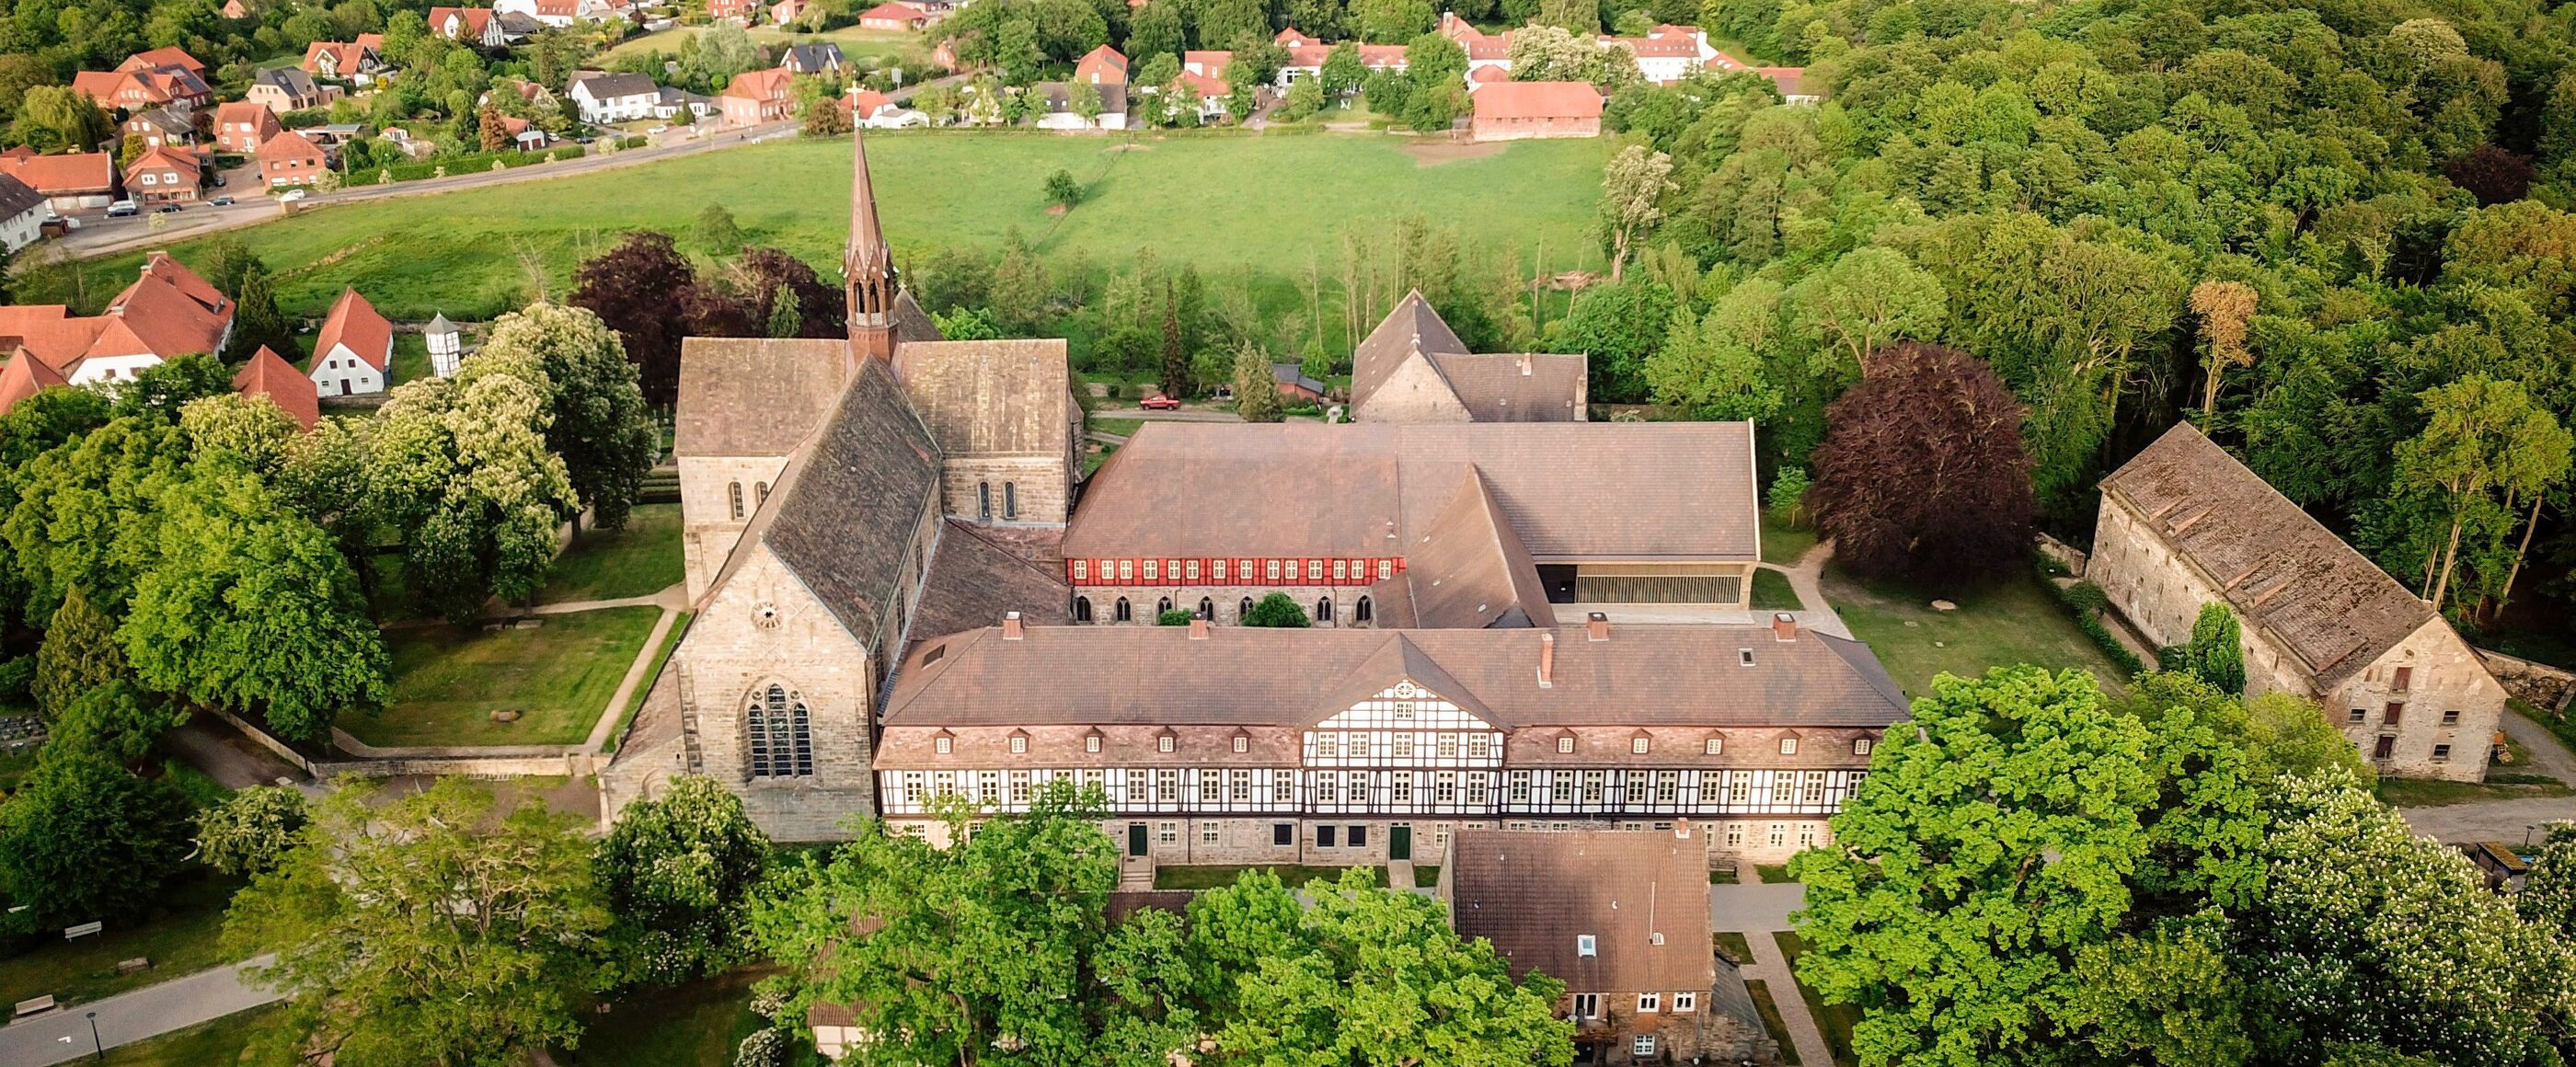 Blick aus der Luft auf die Gebäude des Kloster Loccum.